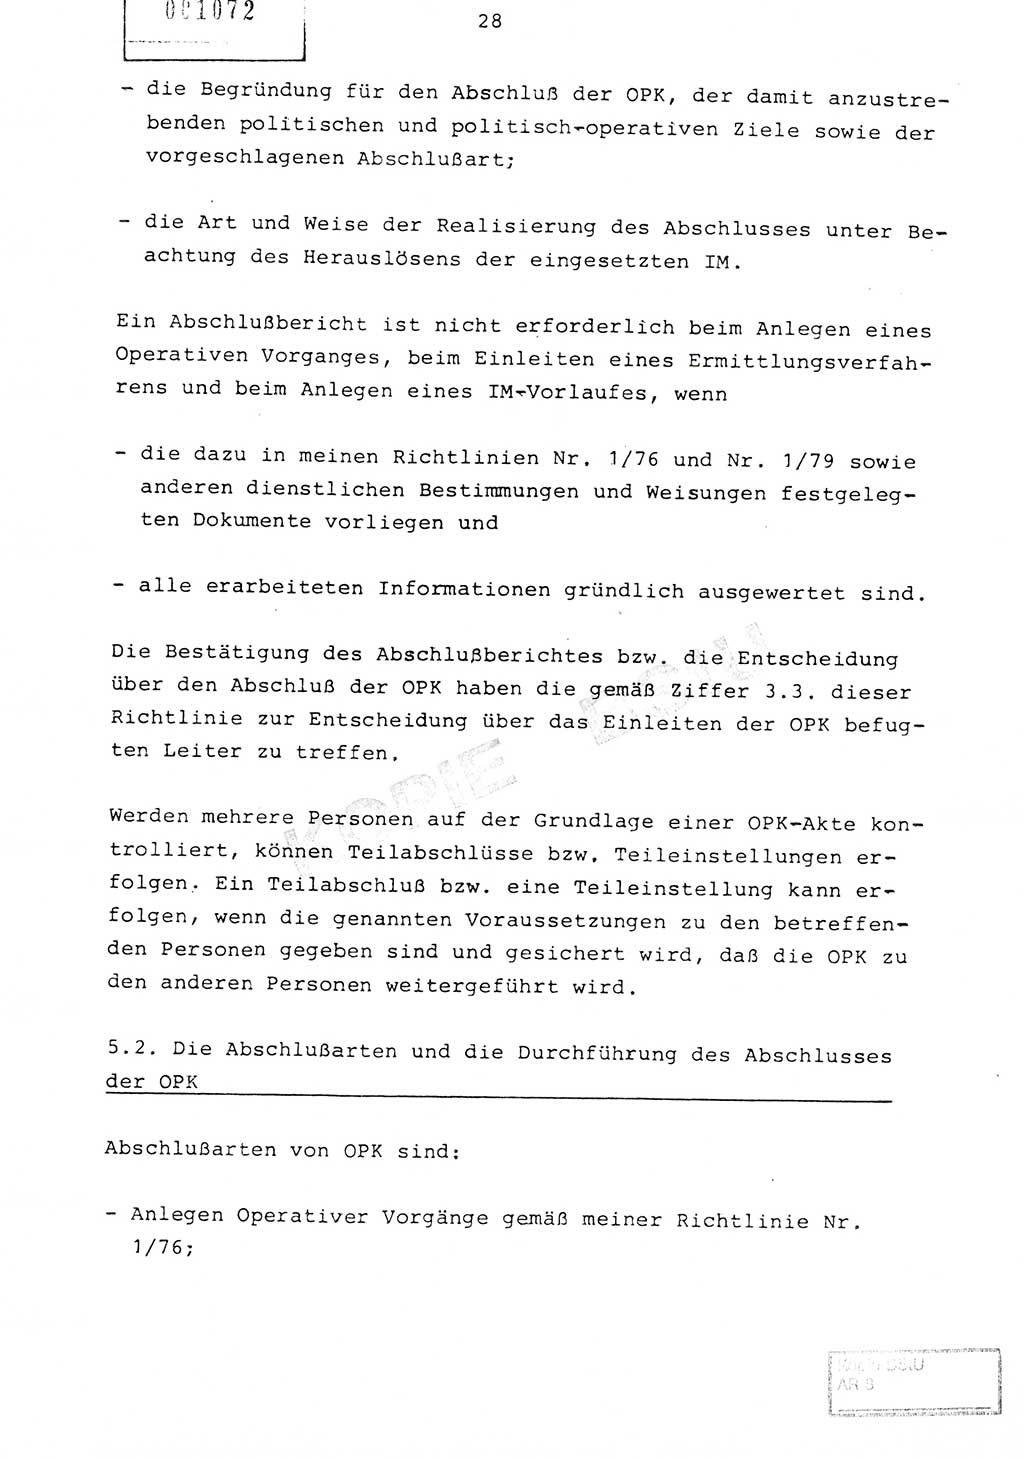 Richtlinie Nr. 1/81 über die operative Personenkontrolle (OPK), Ministerium für Staatssicherheit (MfS) [Deutsche Demokratische Republik (DDR)], Der Minister, Geheime Verschlußsache (GVS) ooo8-10/81, Berlin 1981, Blatt 28 (RL 1/81 OPK DDR MfS Min. GVS ooo8-10/81 1981, Bl. 28)